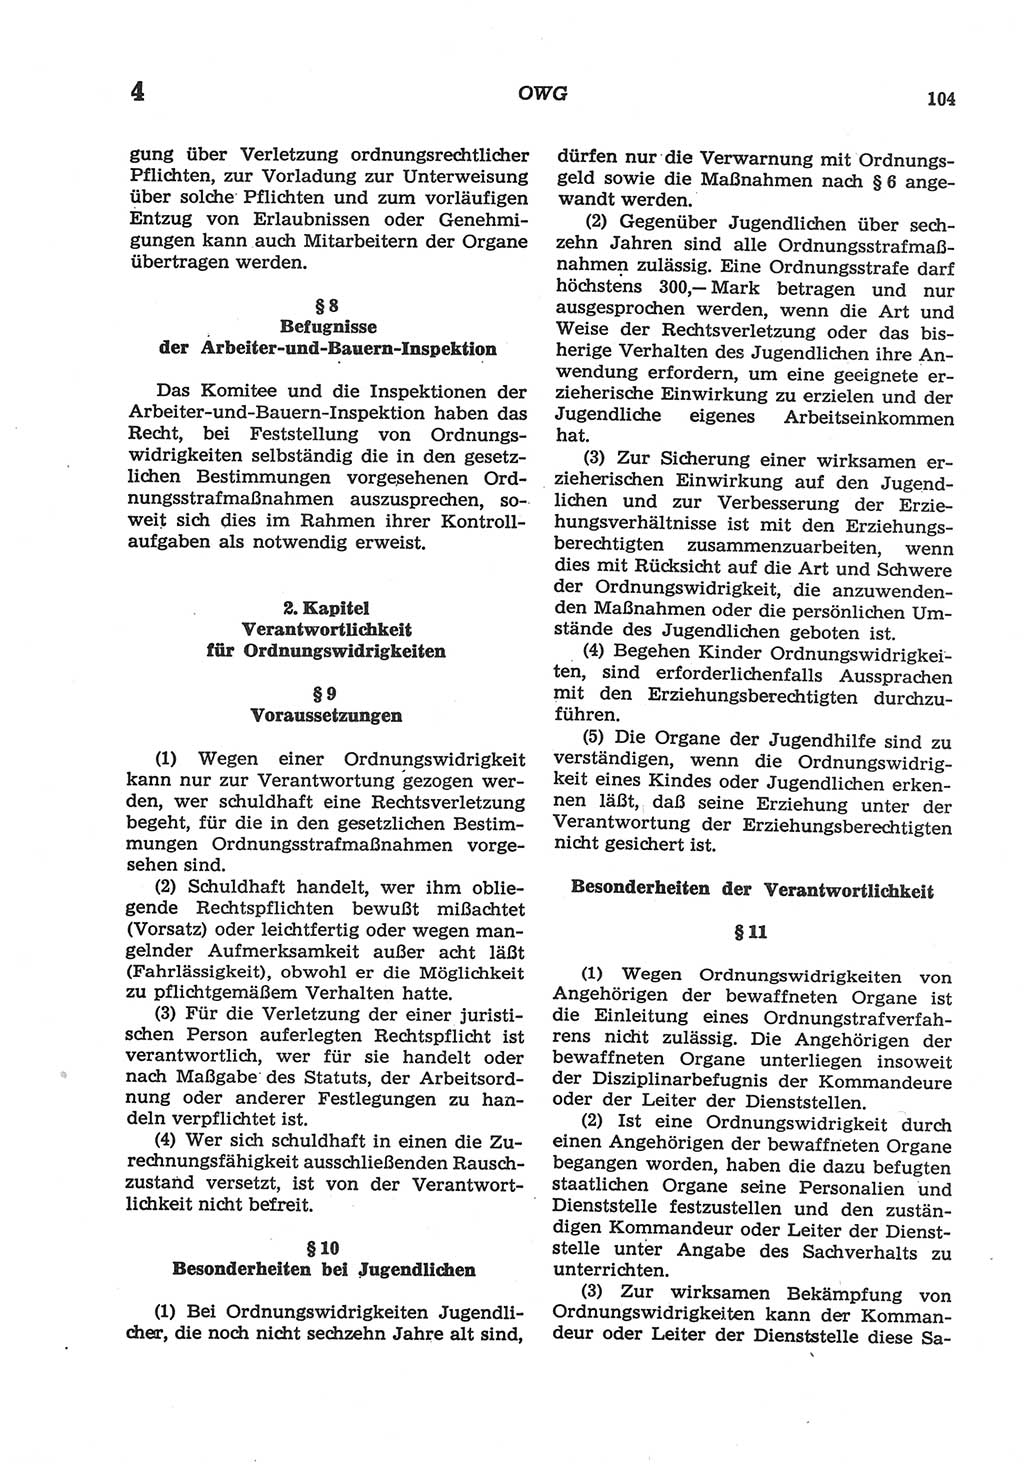 Strafgesetzbuch (StGB) der Deutschen Demokratischen Republik (DDR) und angrenzende Gesetze und Bestimmungen 1977, Seite 104 (StGB DDR Ges. Best. 1977, S. 104)